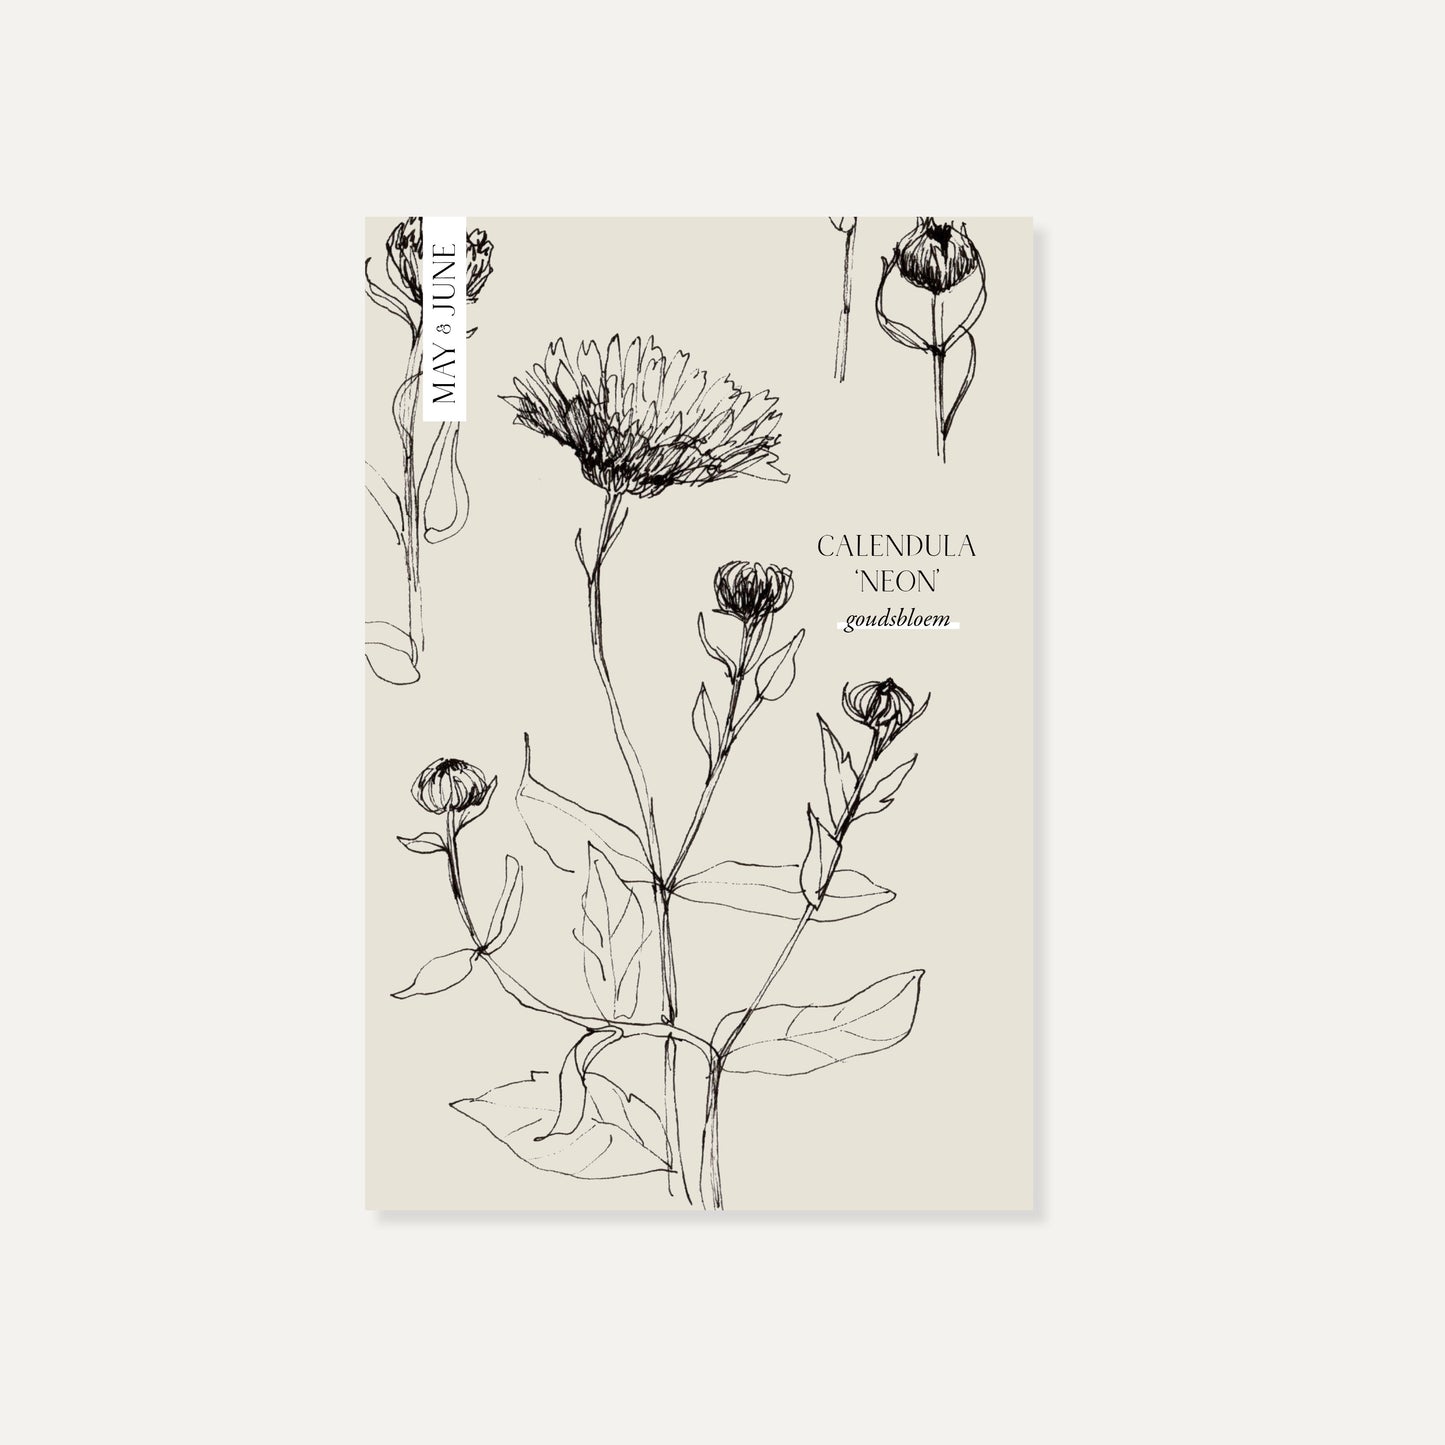 Calendula officinalis ‘Neon’ (goudsbloem)